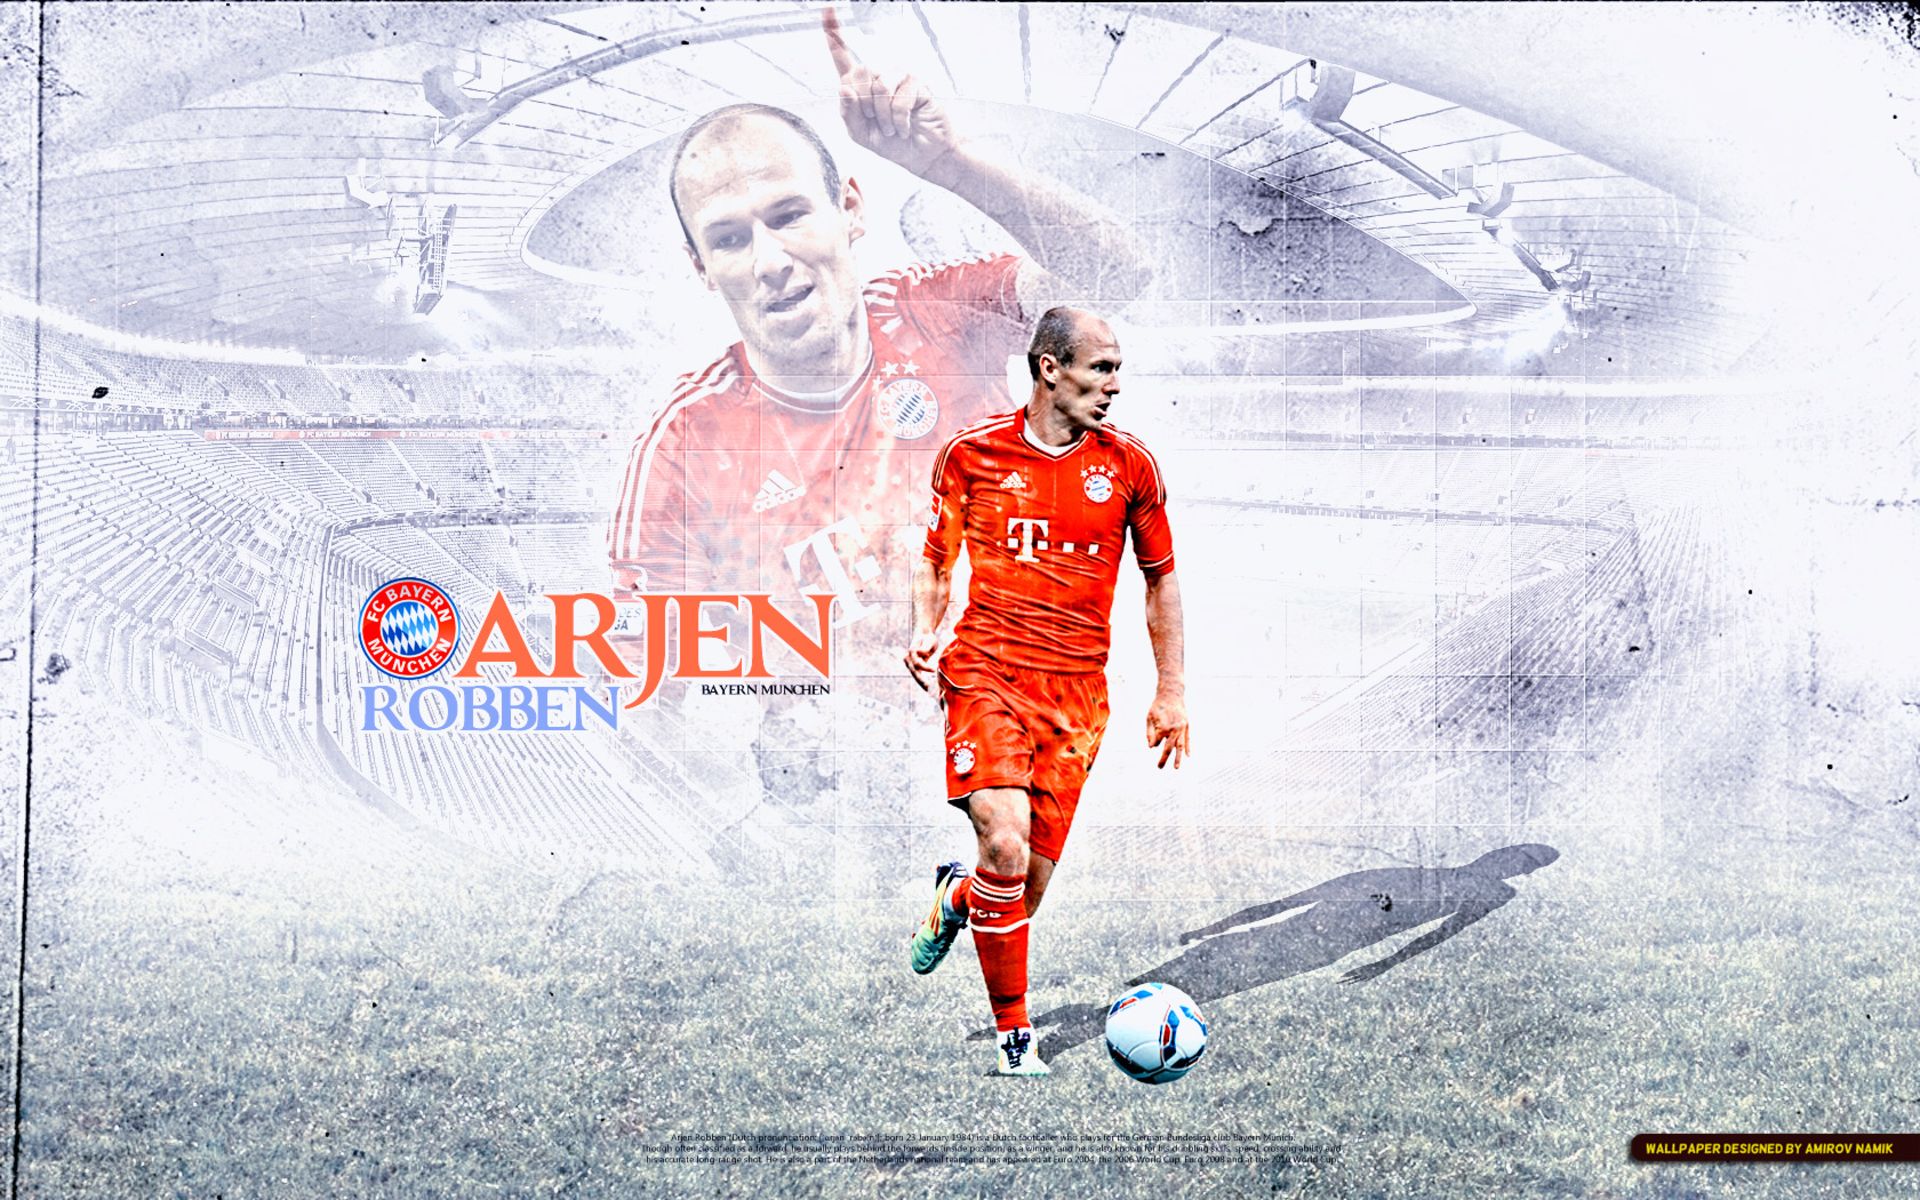 Free download wallpaper Sports, Soccer, Fc Bayern Munich, Arjen Robben on your PC desktop